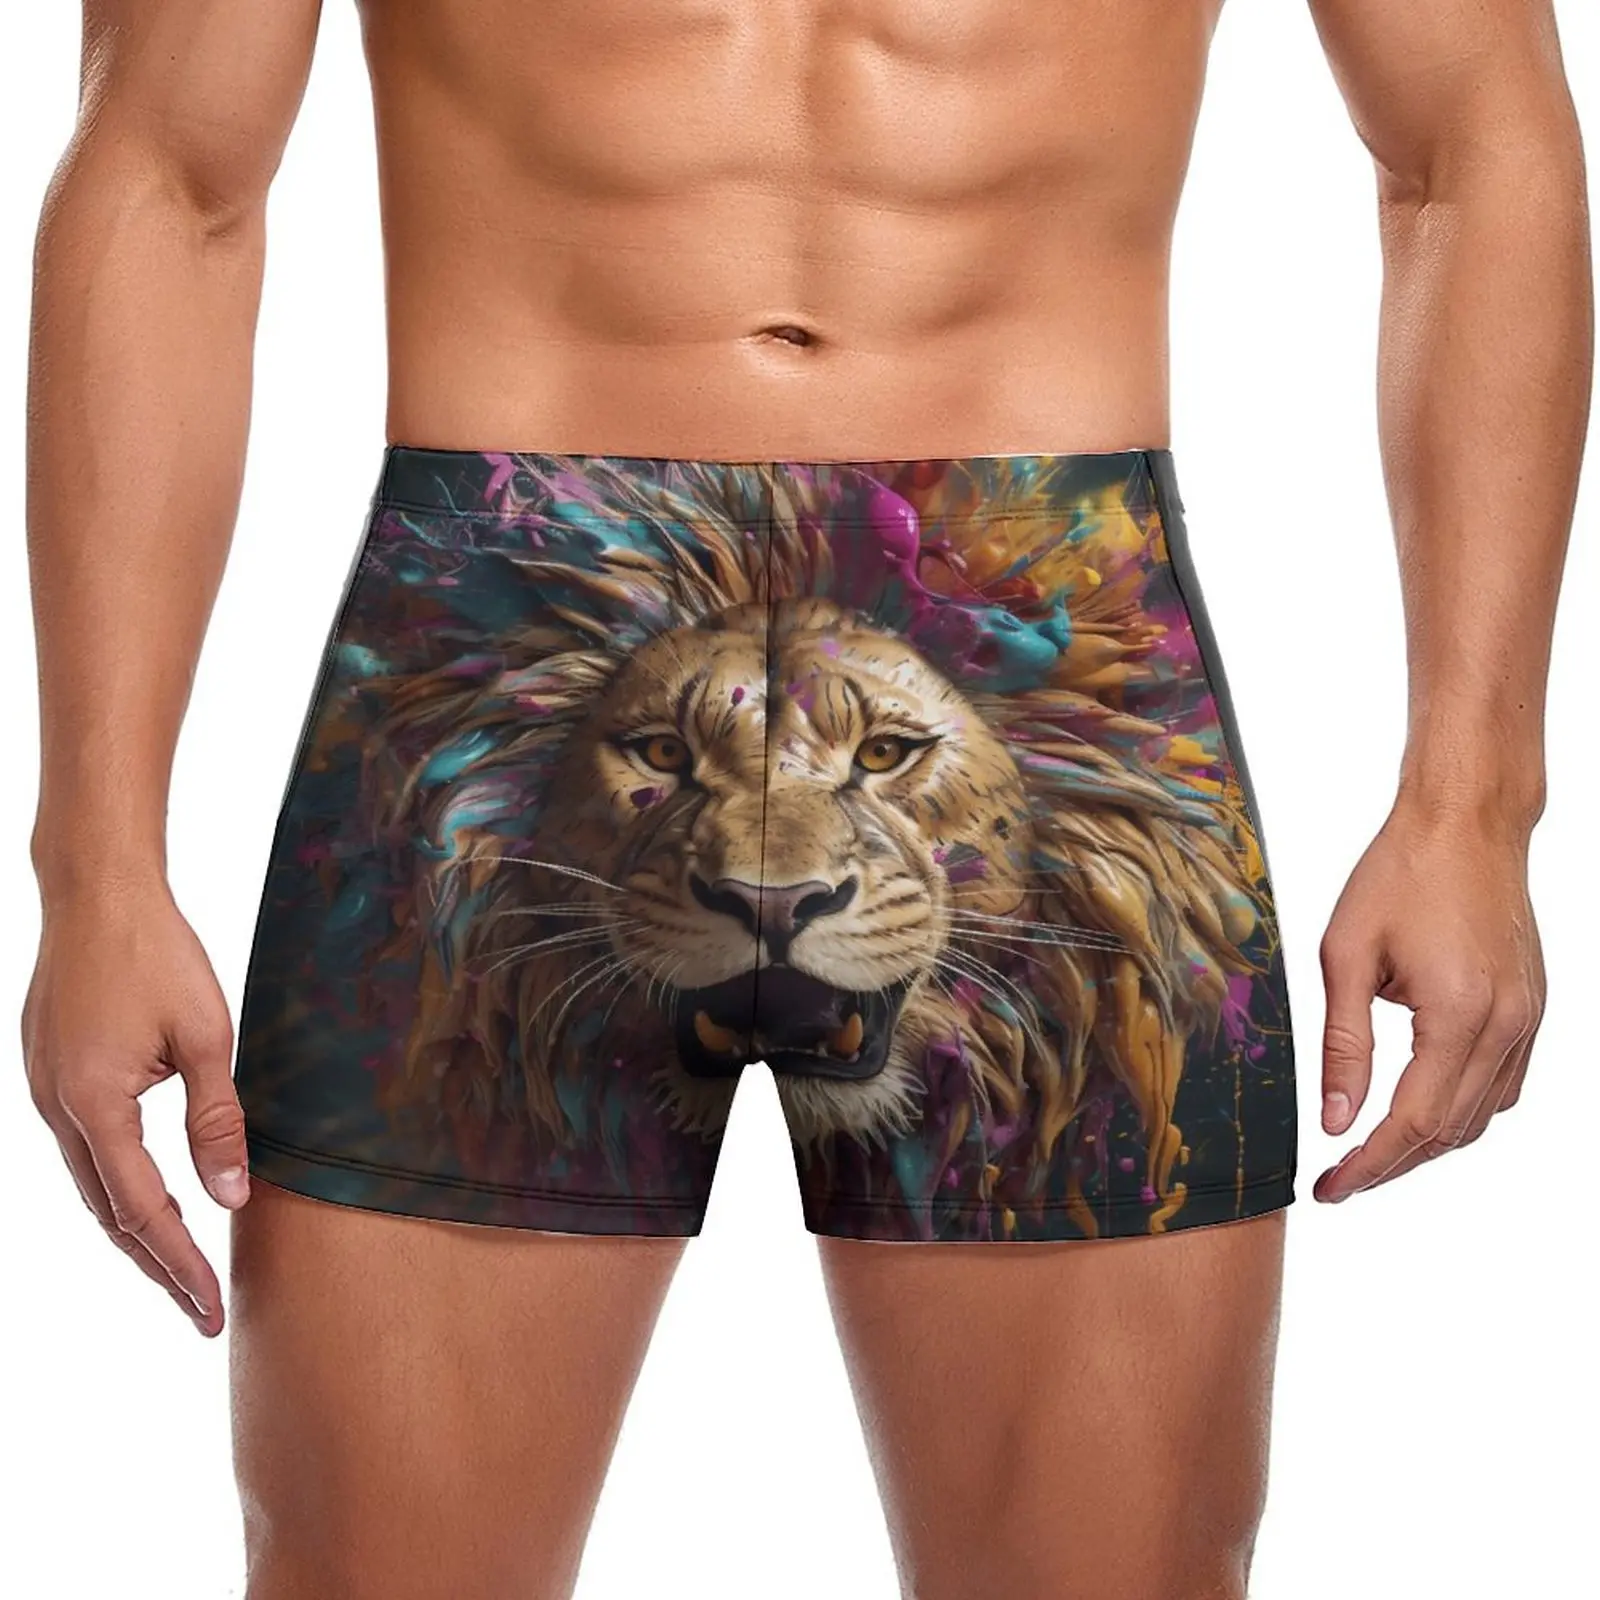 

Плавательные трусы с изображением Льва, пляжные шорты для плавания с рисунком, яркий цвет, мужской купальник